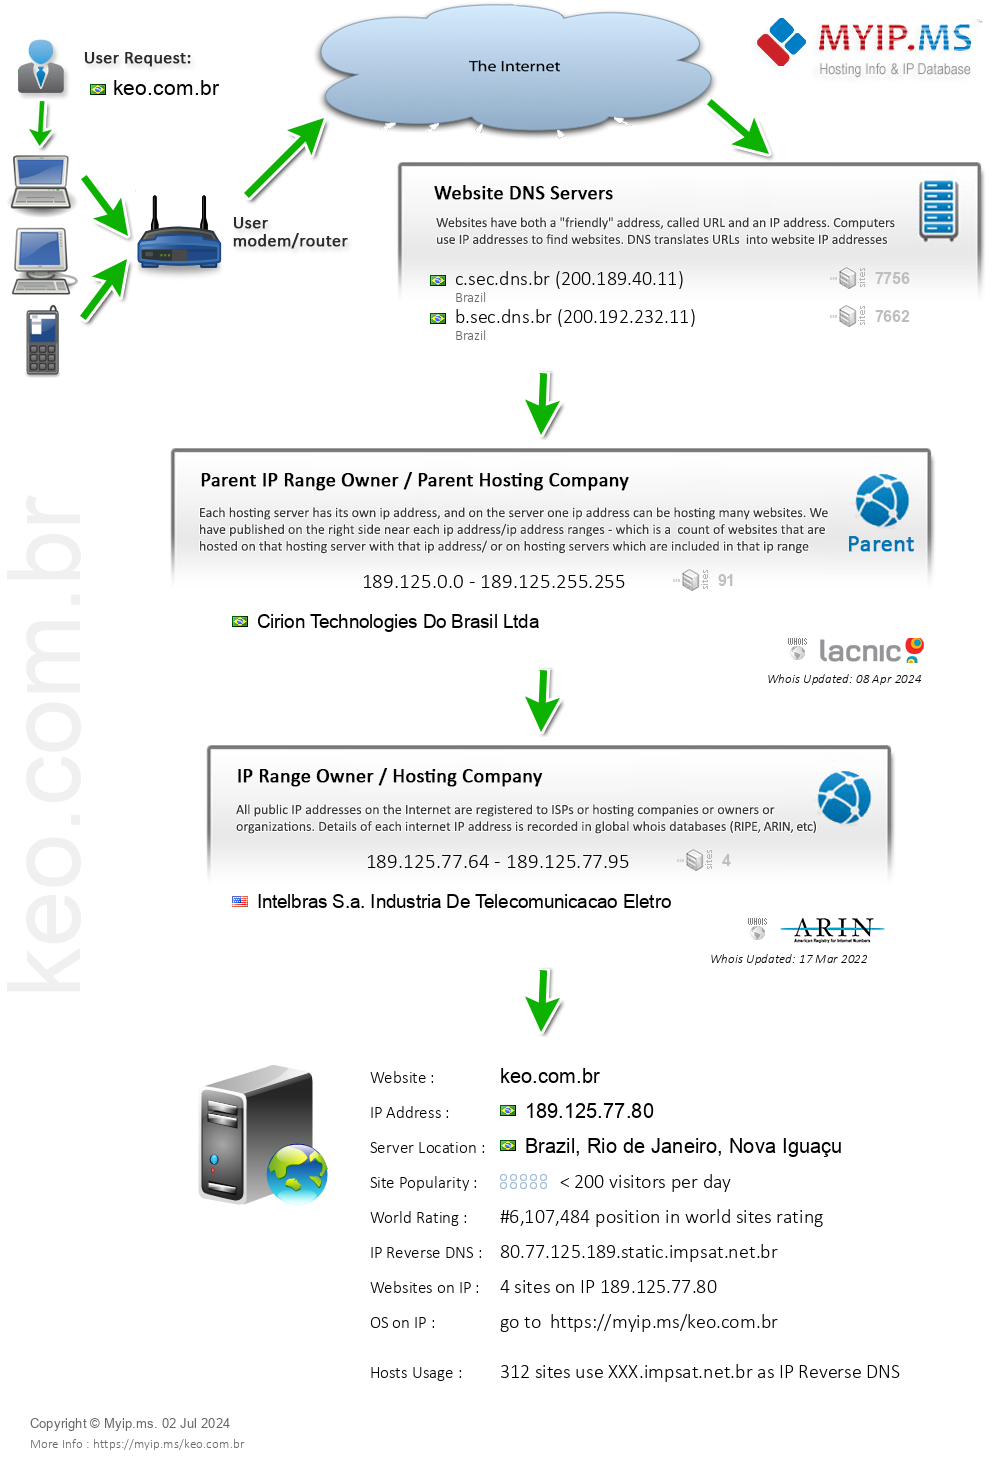 Keo.com.br - Website Hosting Visual IP Diagram